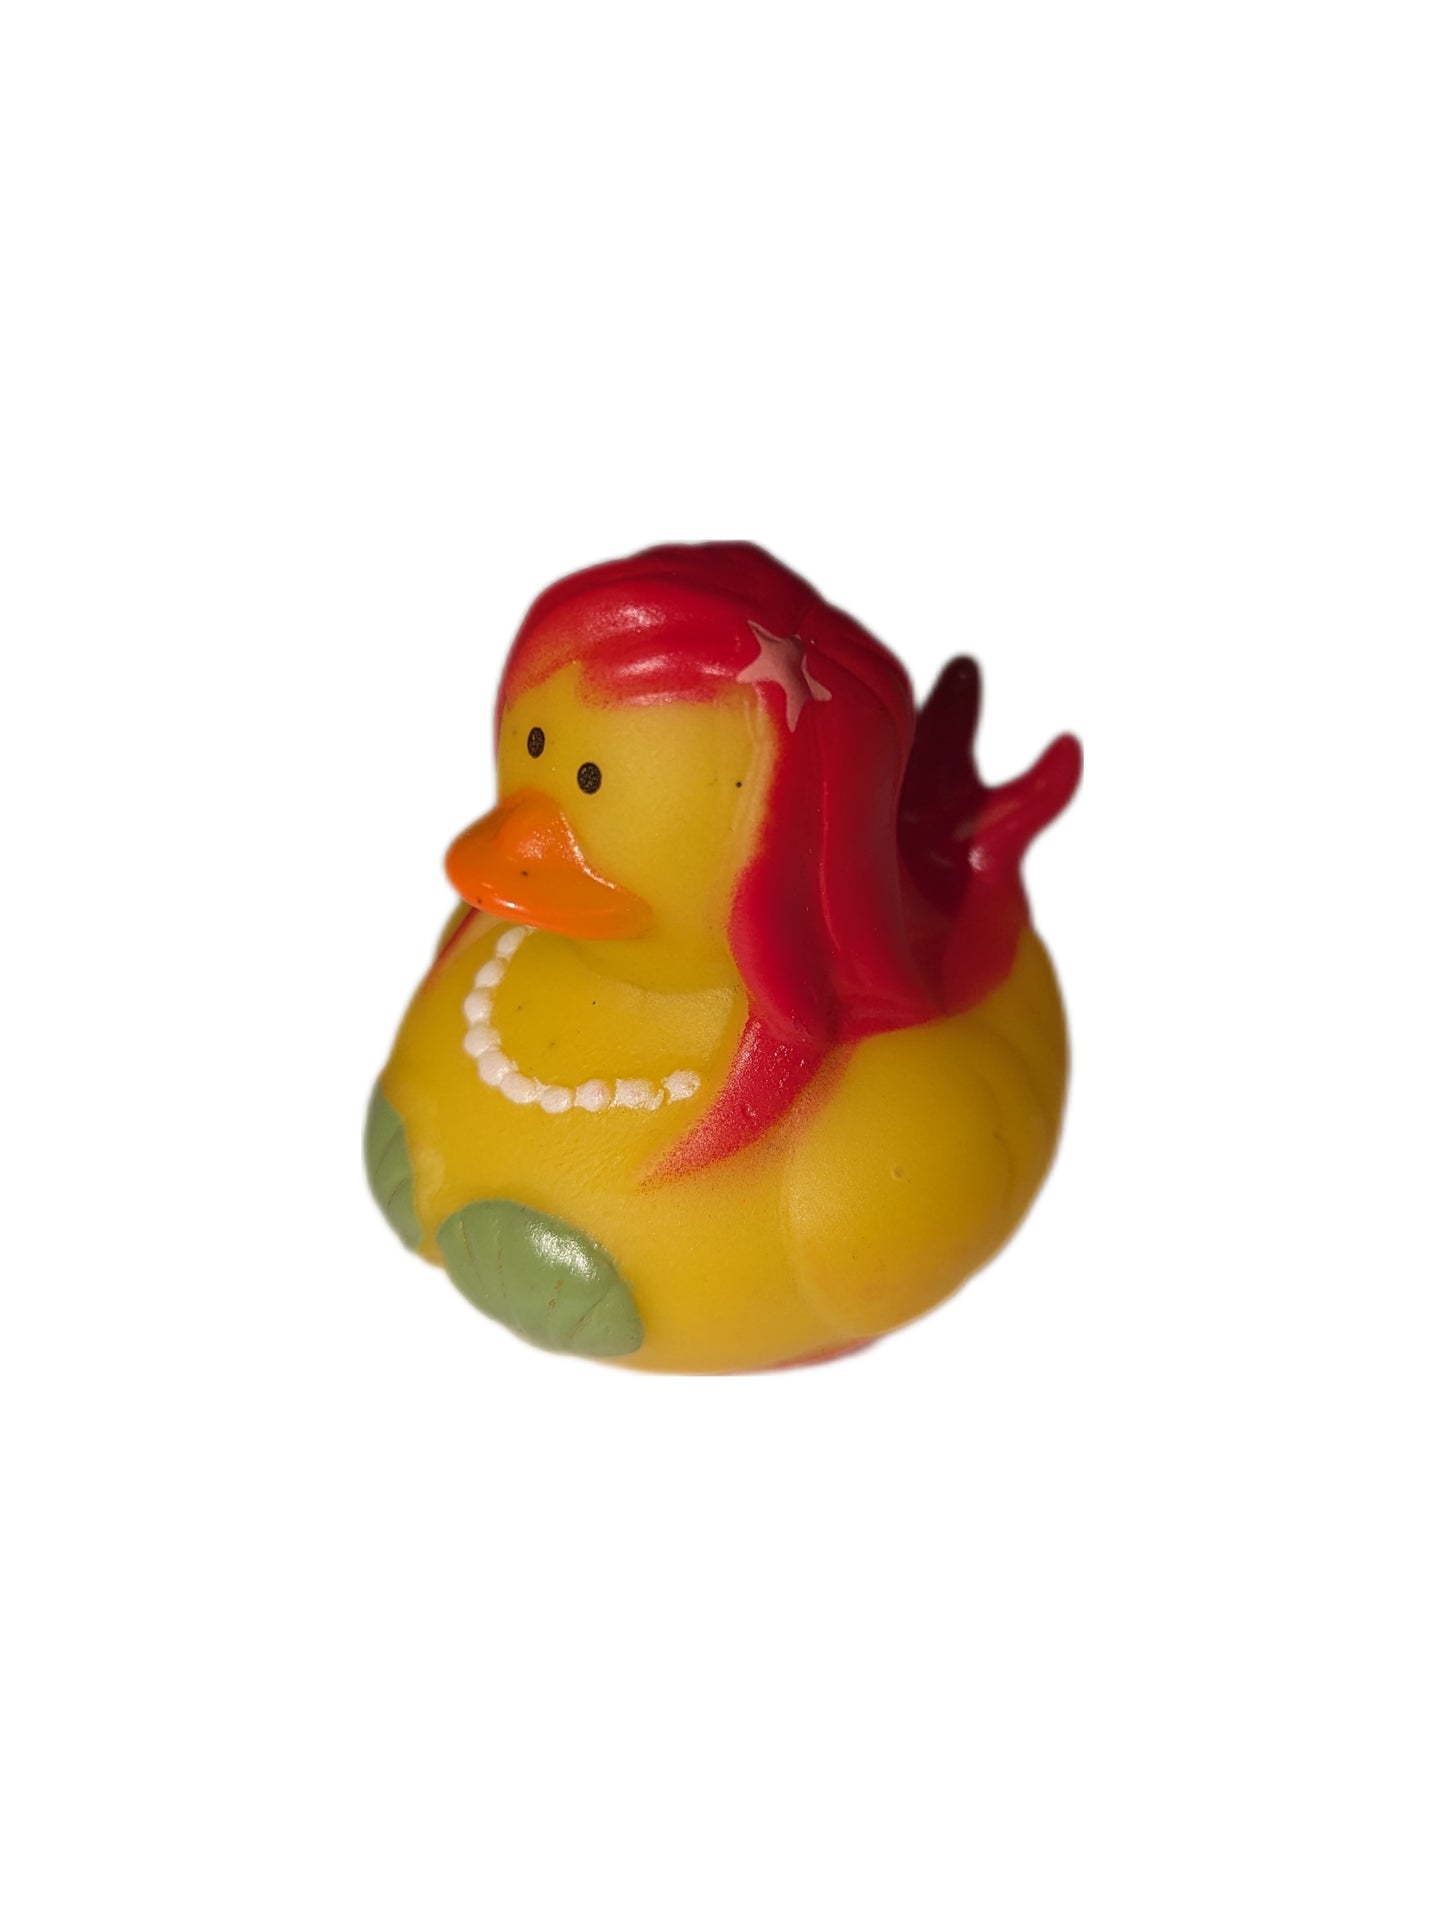 10 Red Mermaid- 2" Rubber Ducks